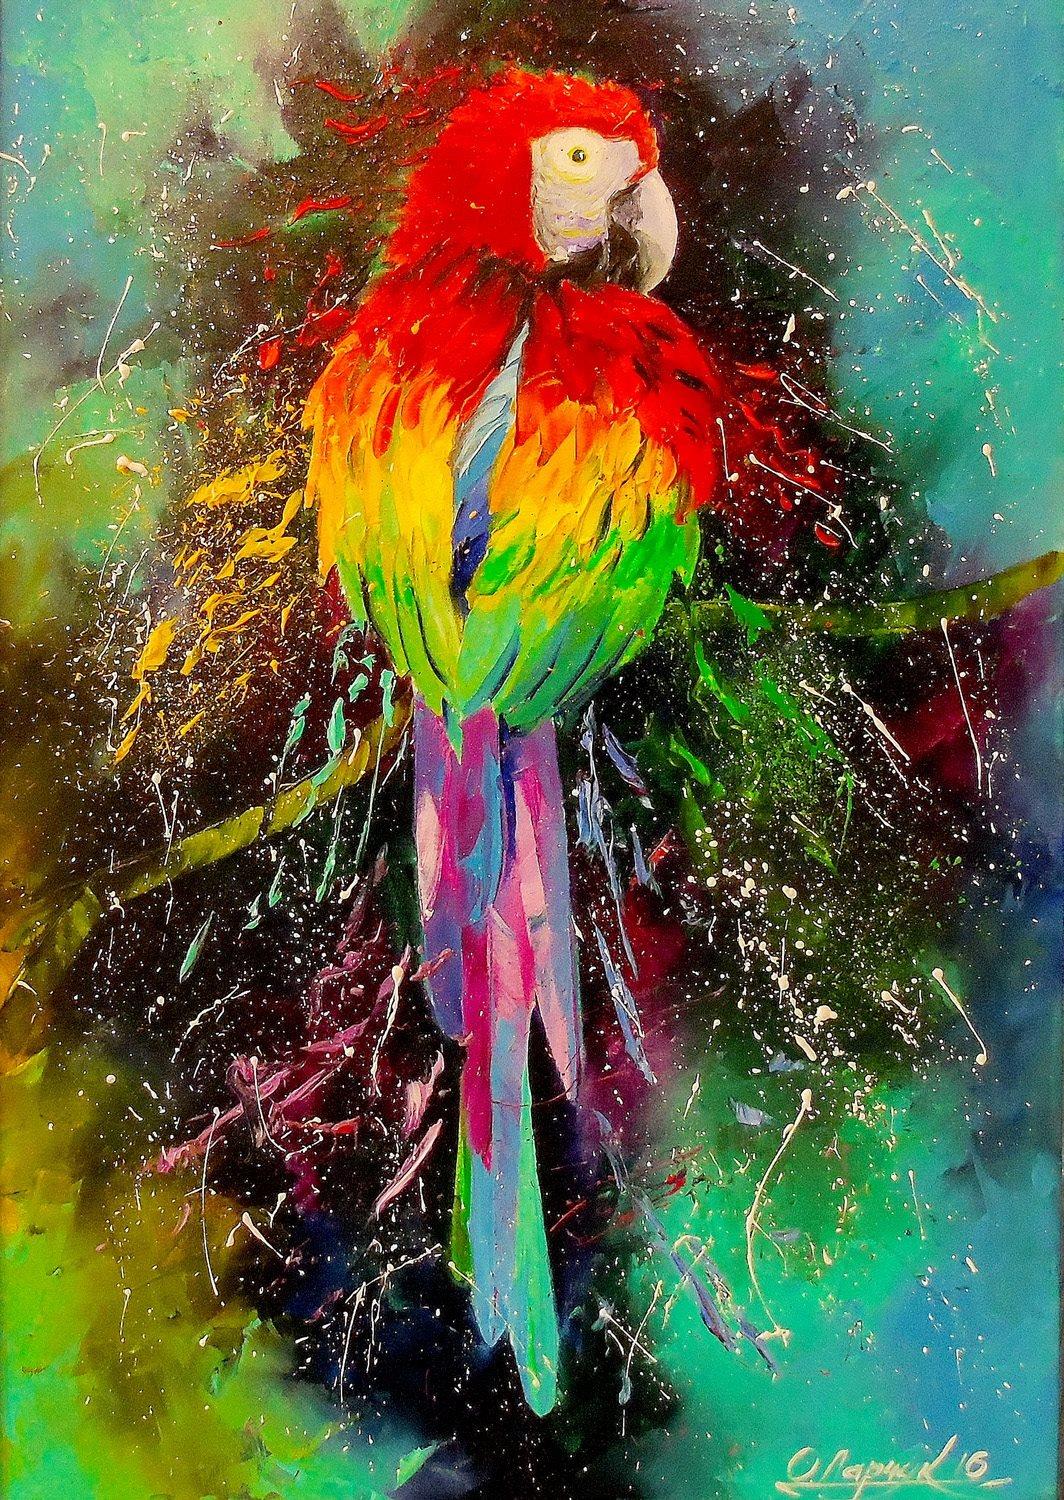 Enjoy Colorful Parrot Jigsaw Puzzle (1000 Pieces)